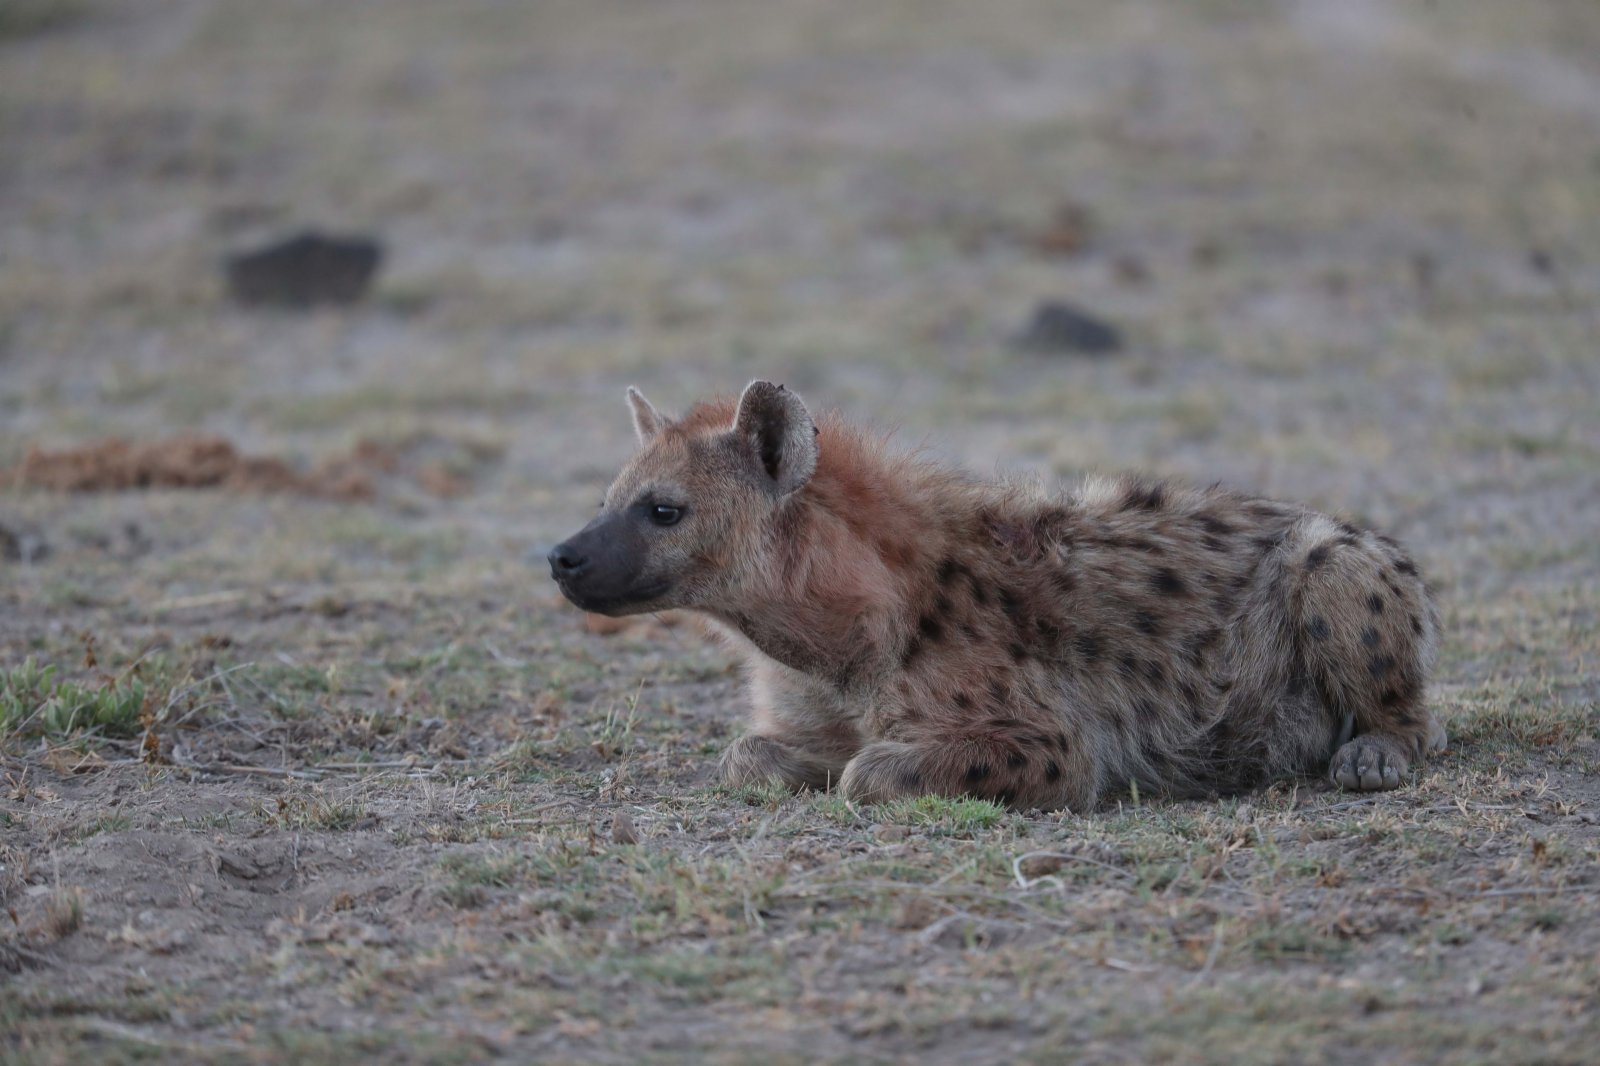 這是6月12日在肯尼亚安博塞利國家公園拍攝的鬣狗。